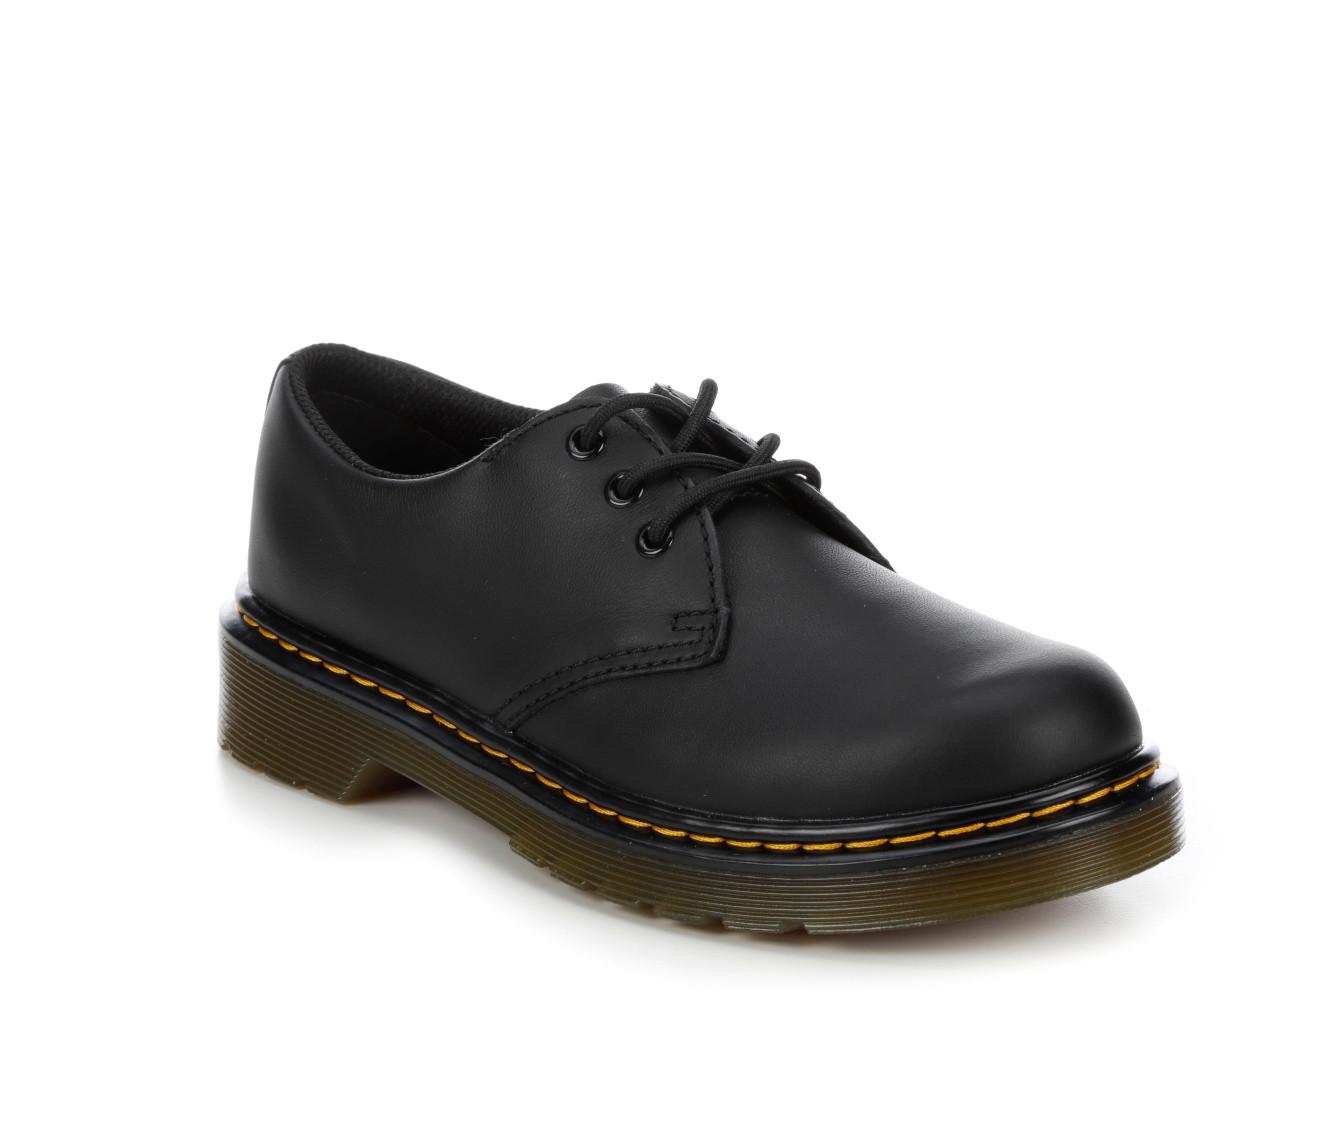 Girls' Dr. Martens Little Kid & Big Kid 1461 Oxford Shoes